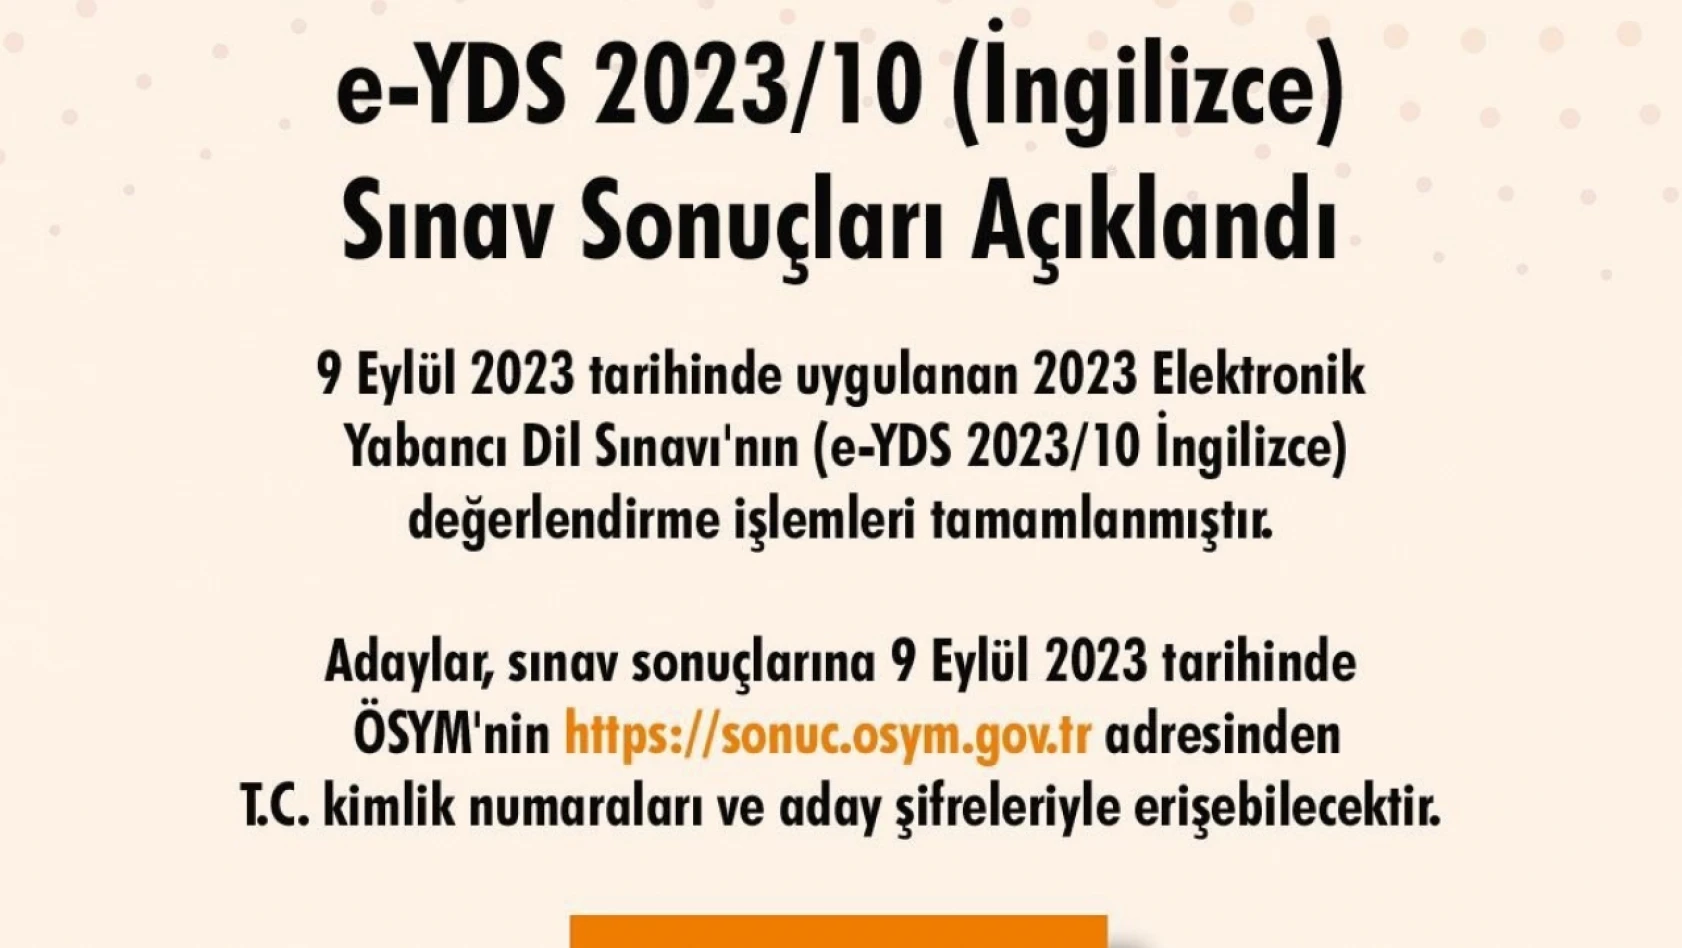 e-YDS 2023/10 sınav sonuçları açıklandı